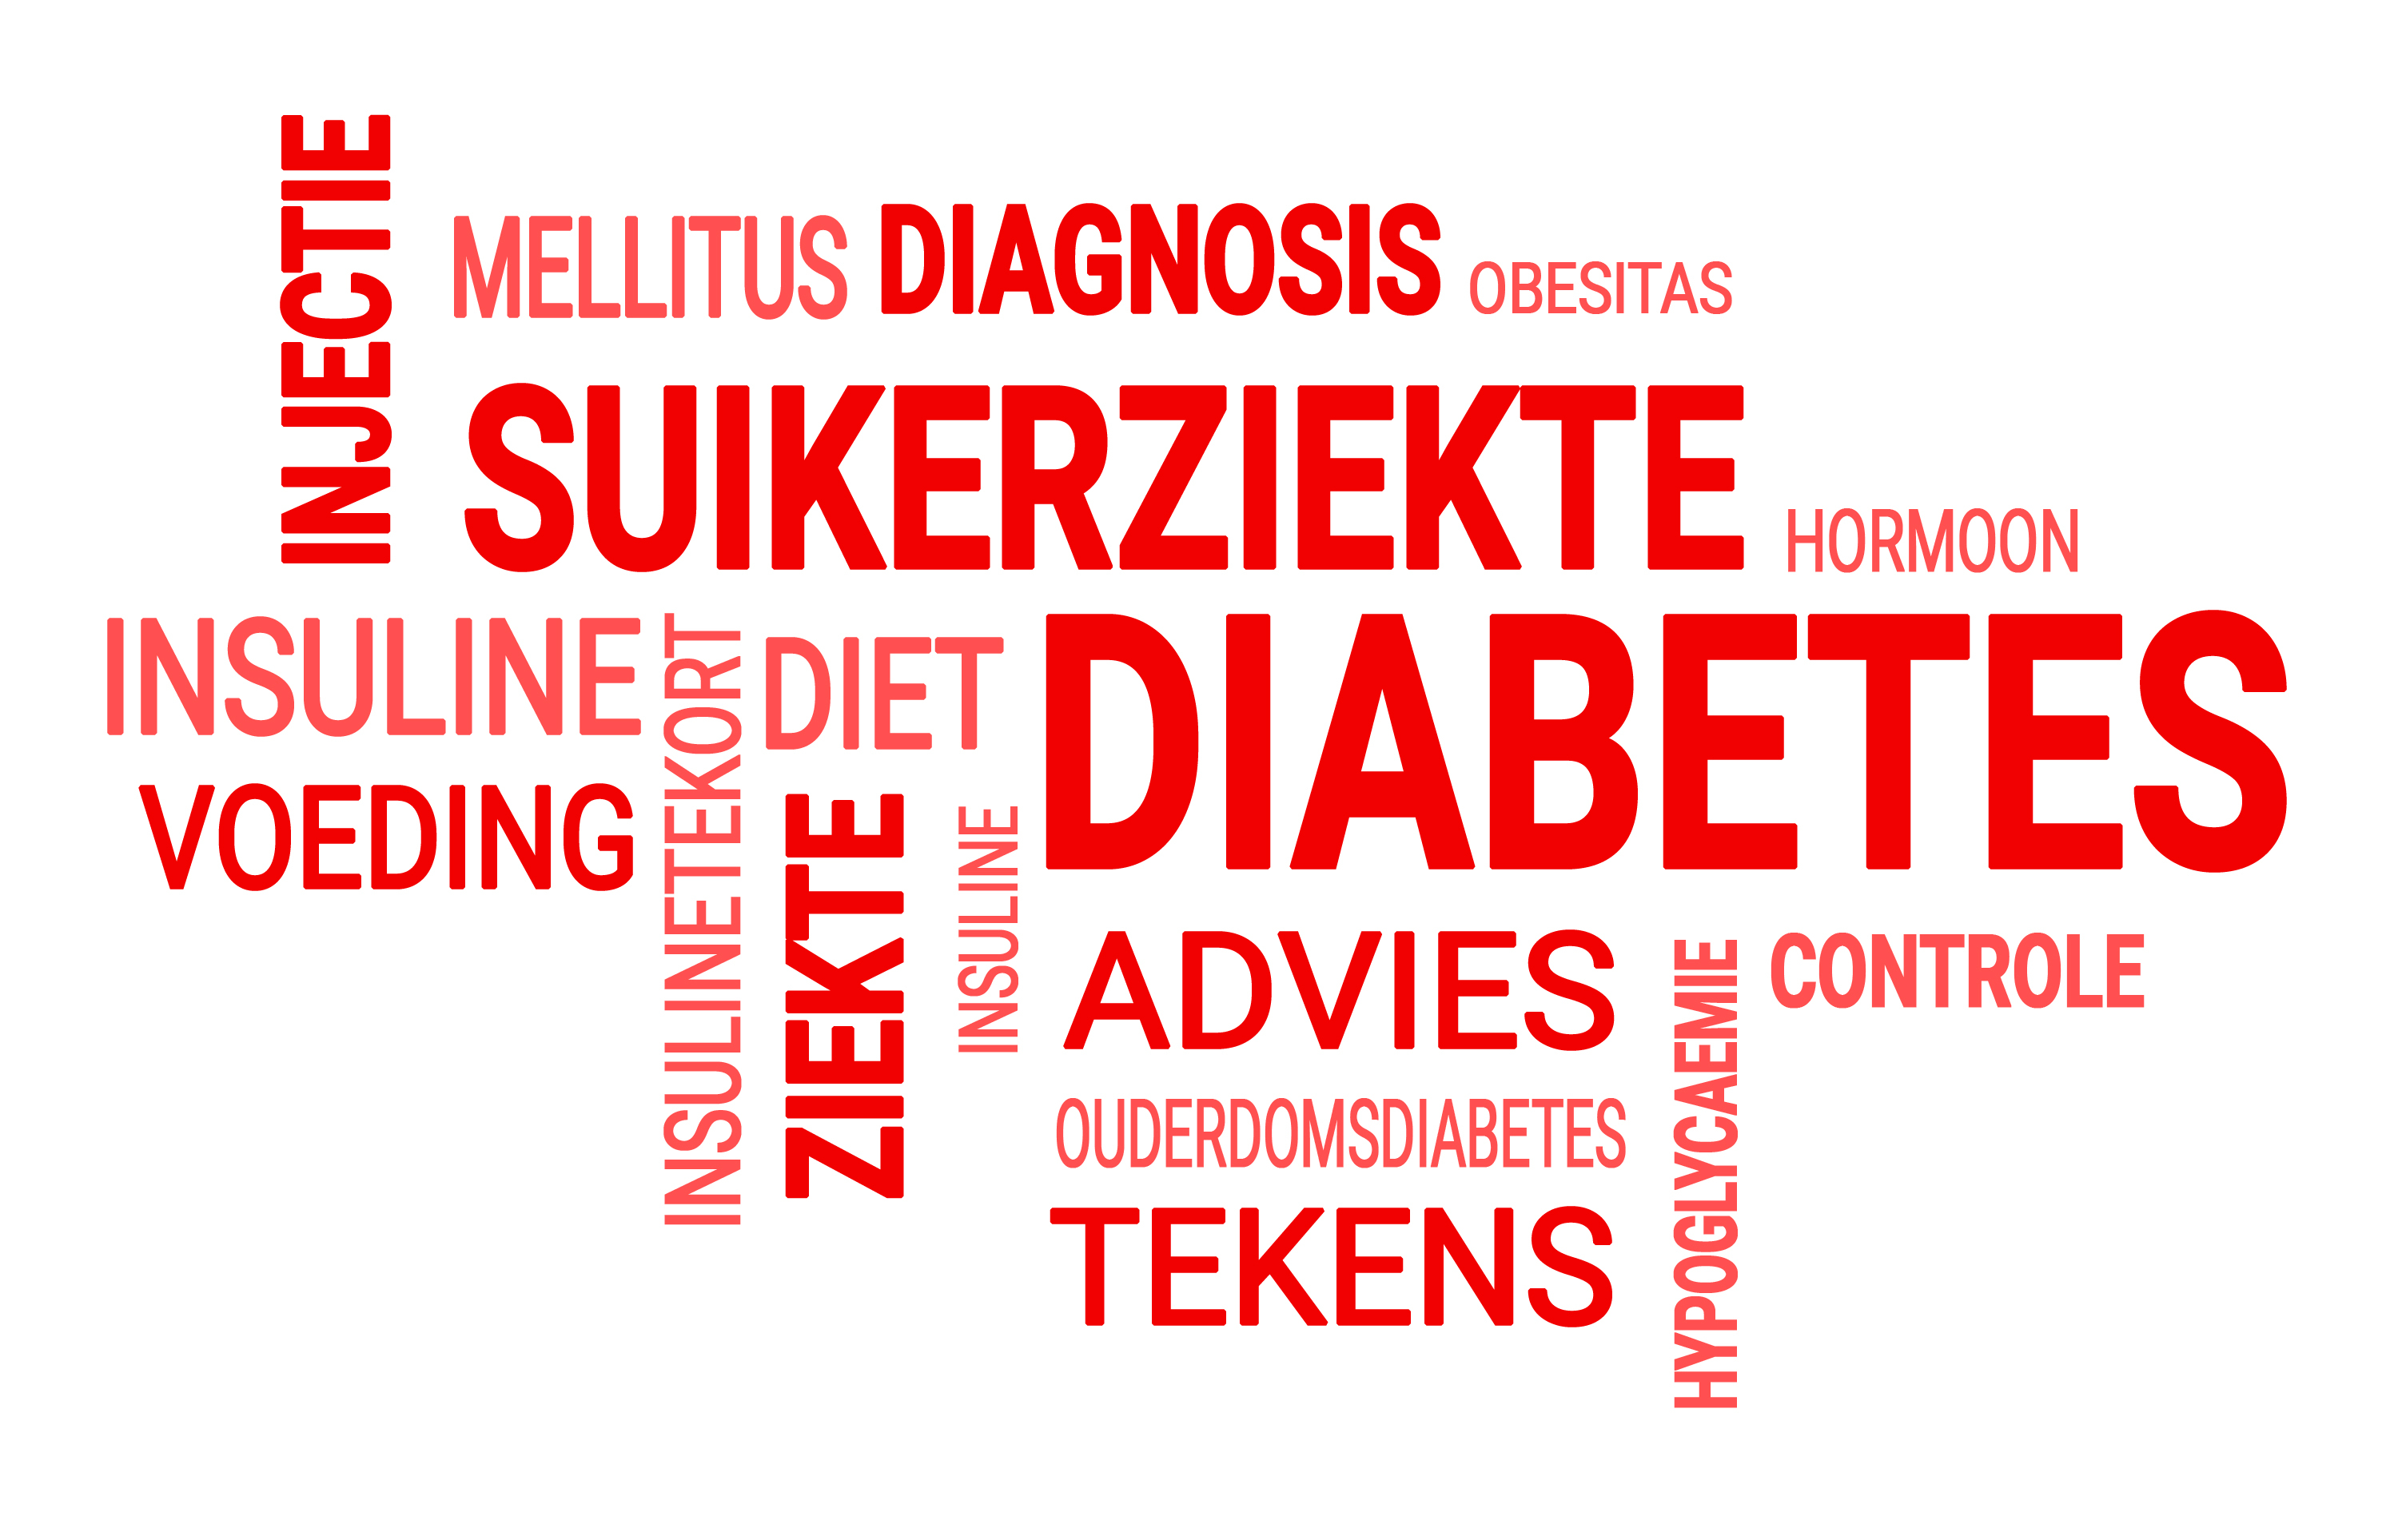 Het Duitse Diabetescentrum doet al meer dan 50 jaar onderzoek naar diabetes mellitus.